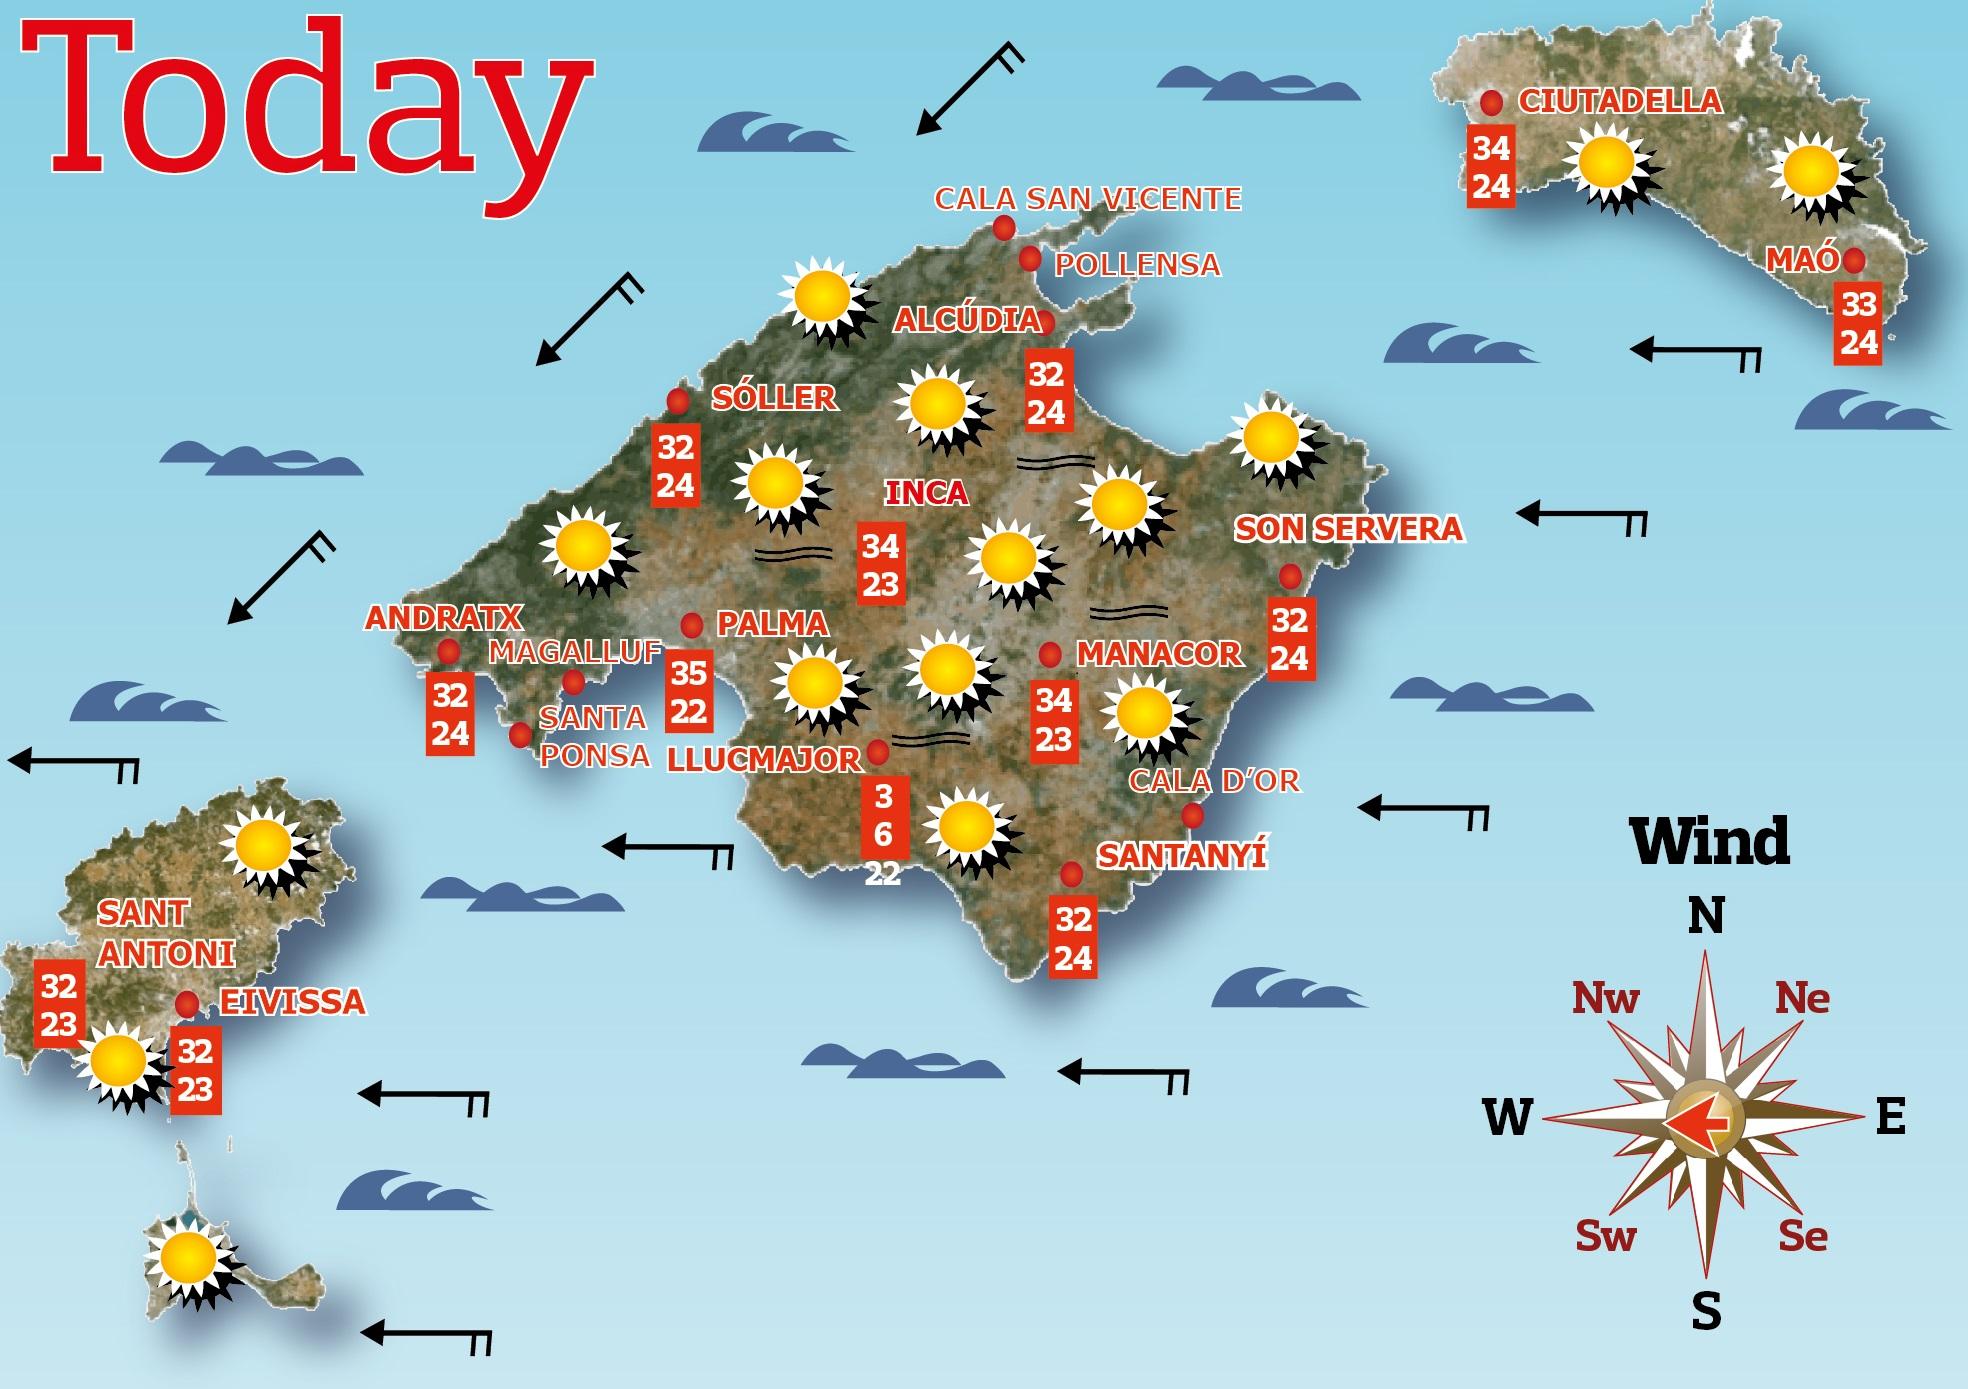 Majorca weather forecast